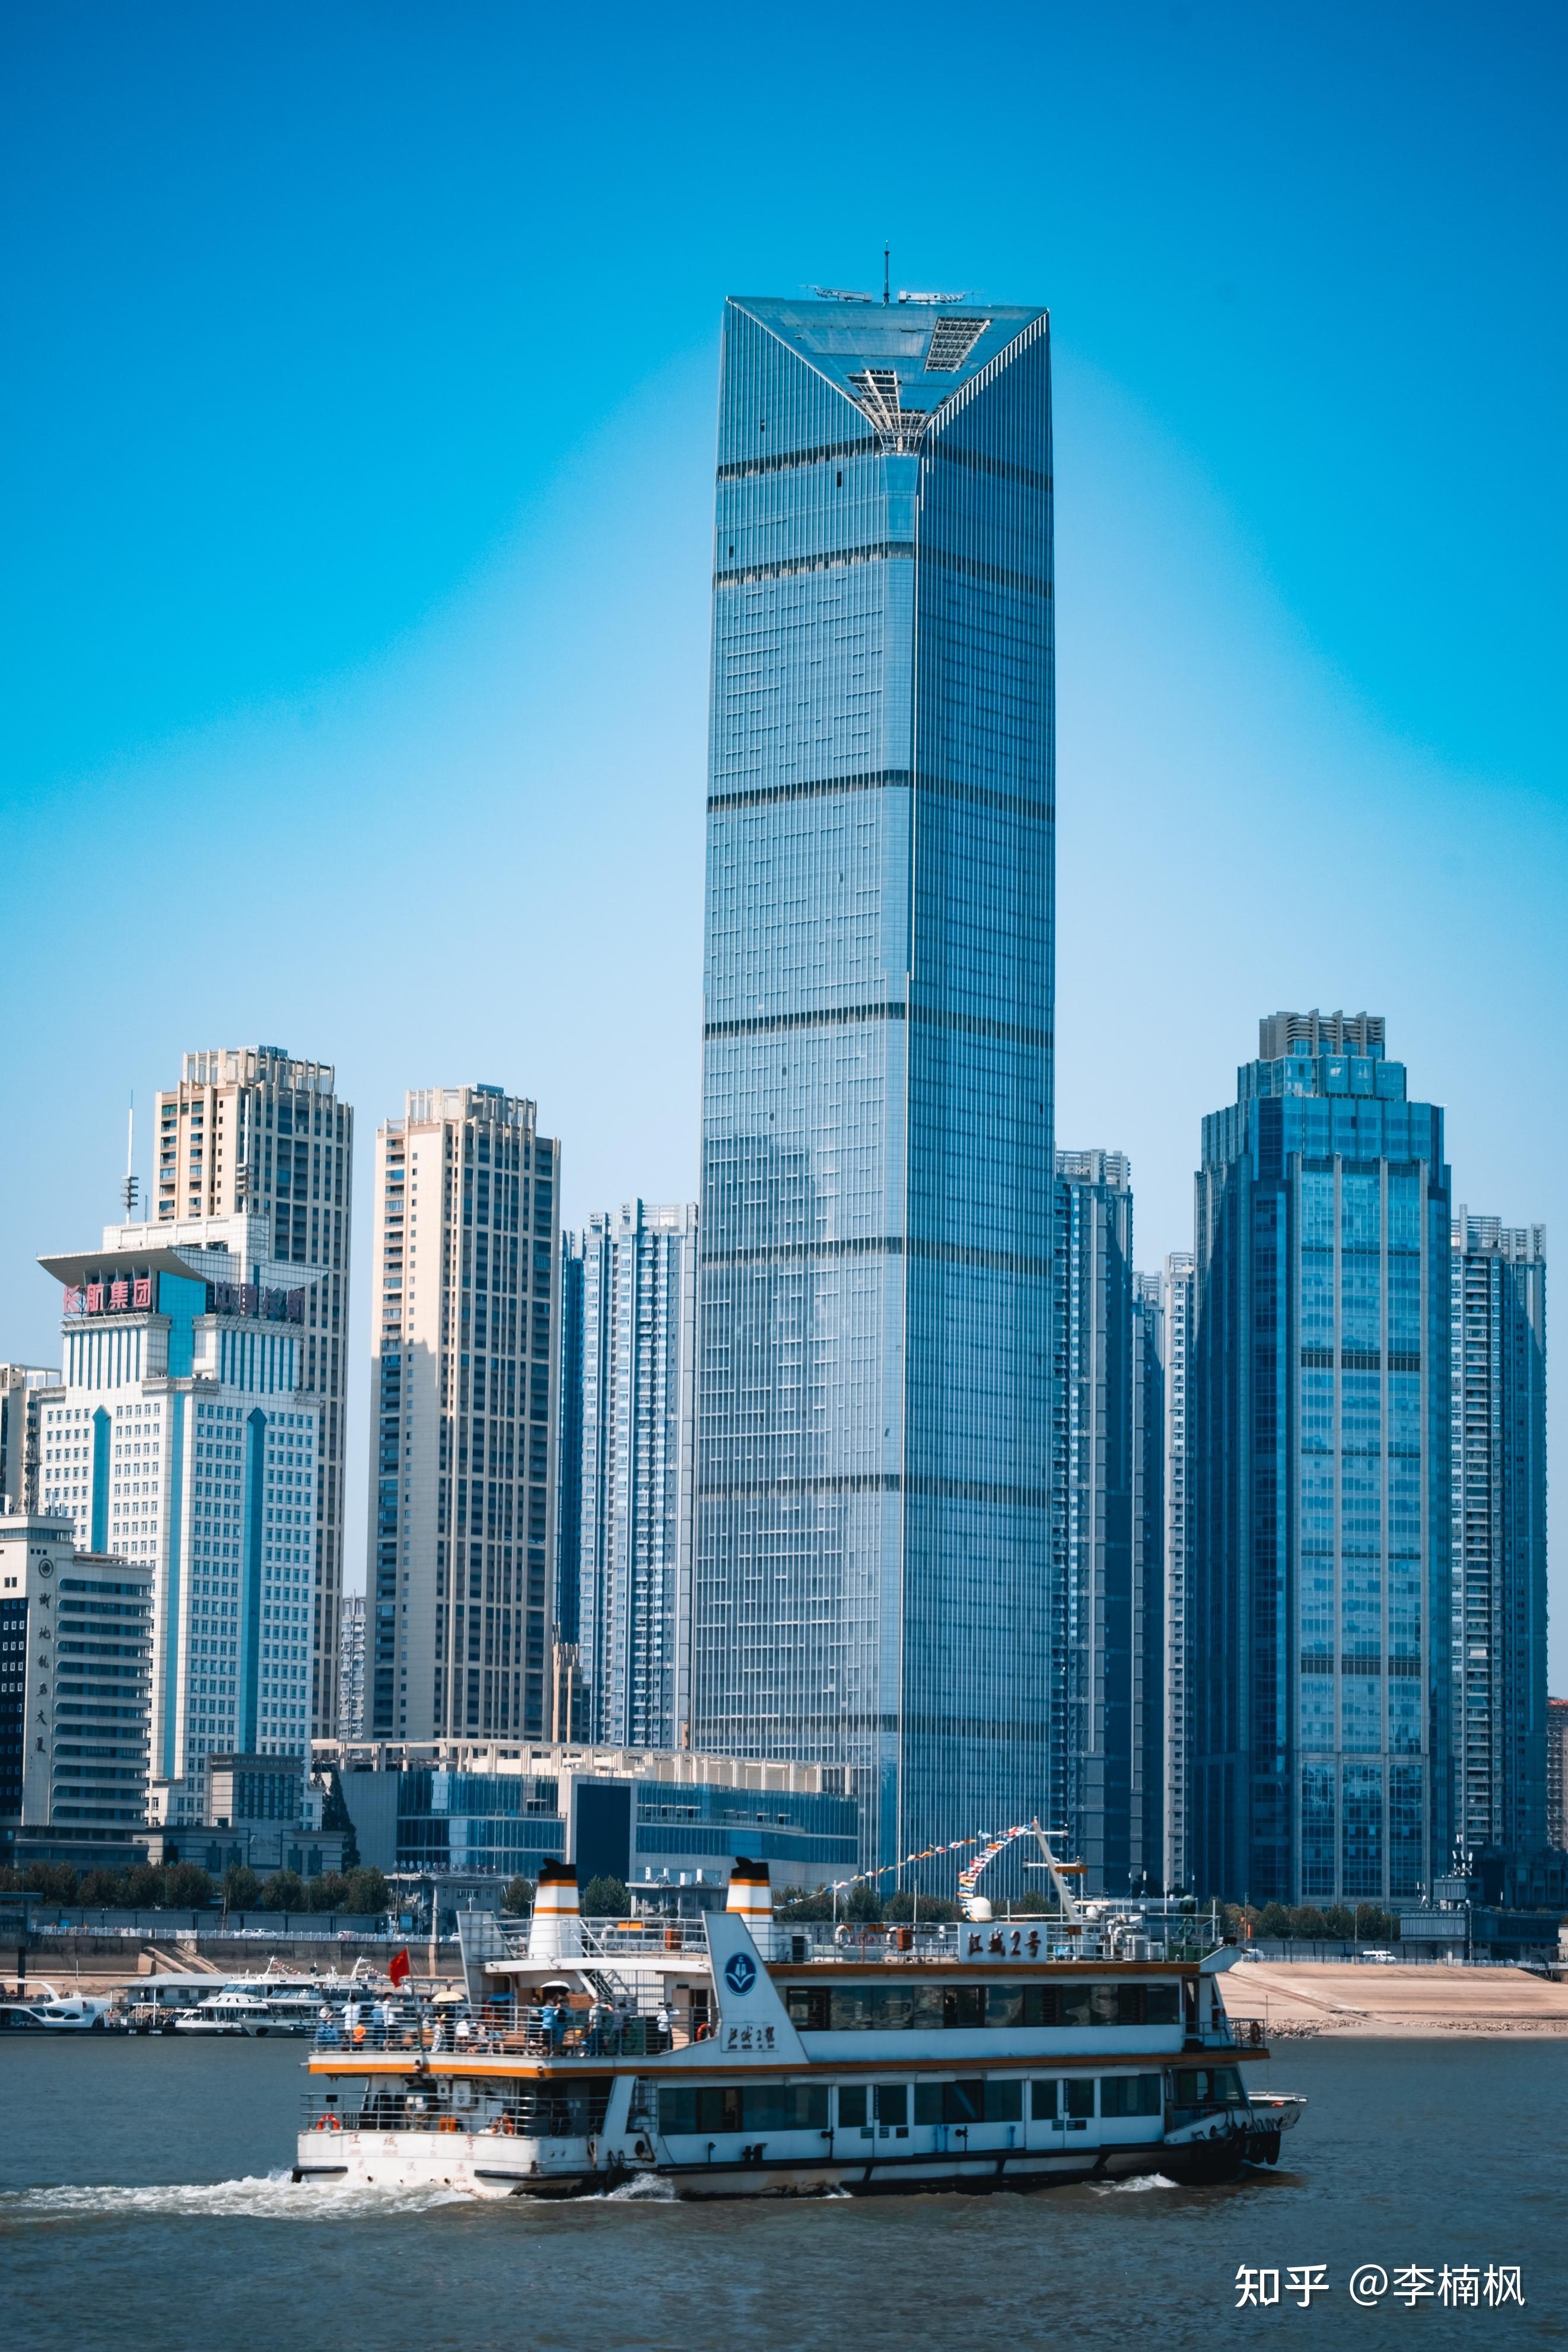 上海浦西第一高楼开工,高480米,比武汉平头哥还要高5米 